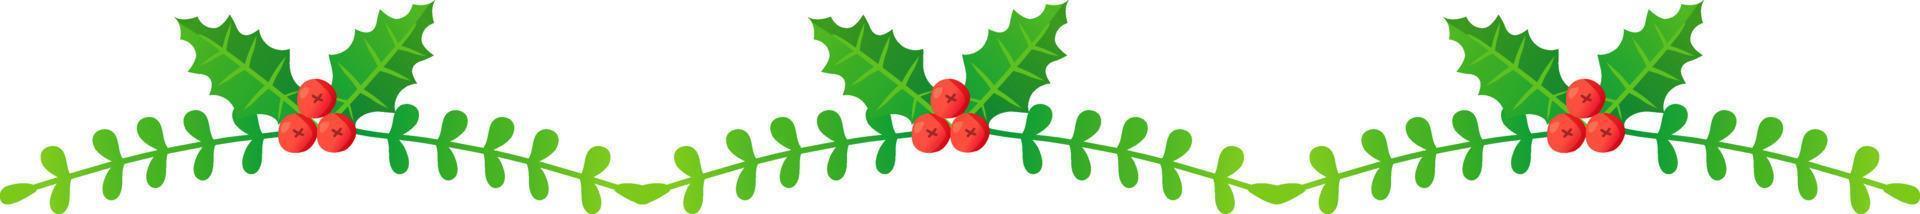 Christmas ornate garland Fir branch vector